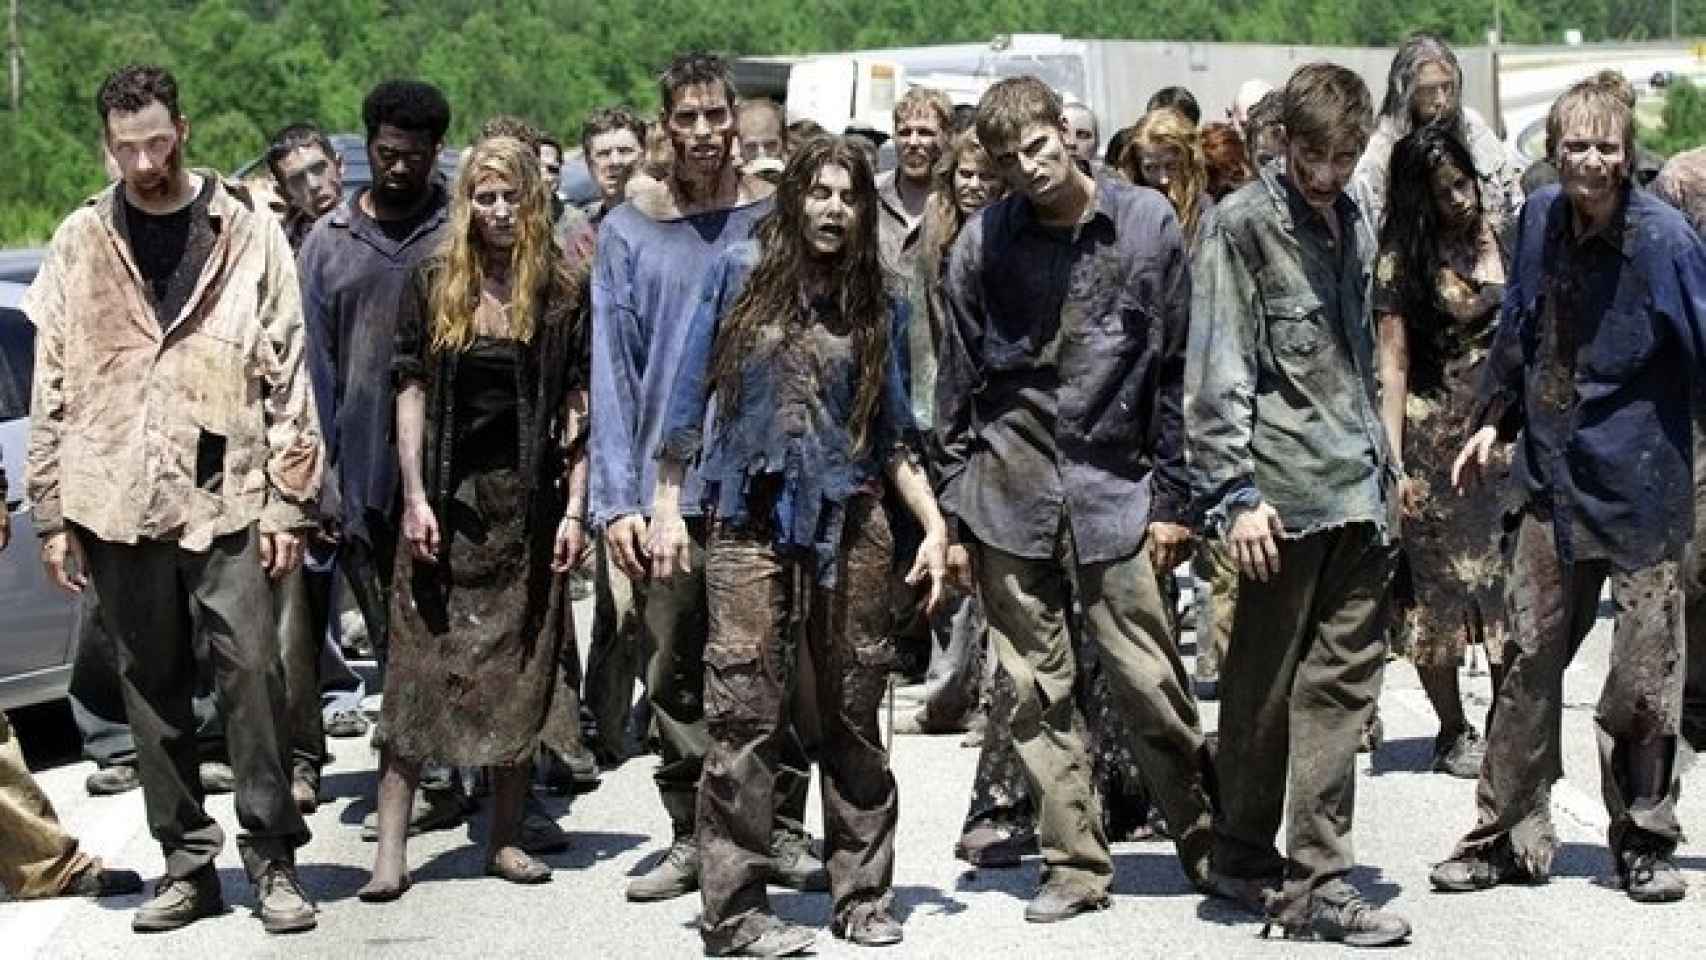 Zombies de la serie de television The walking dead, un buen referente si elegimos este disfraz.